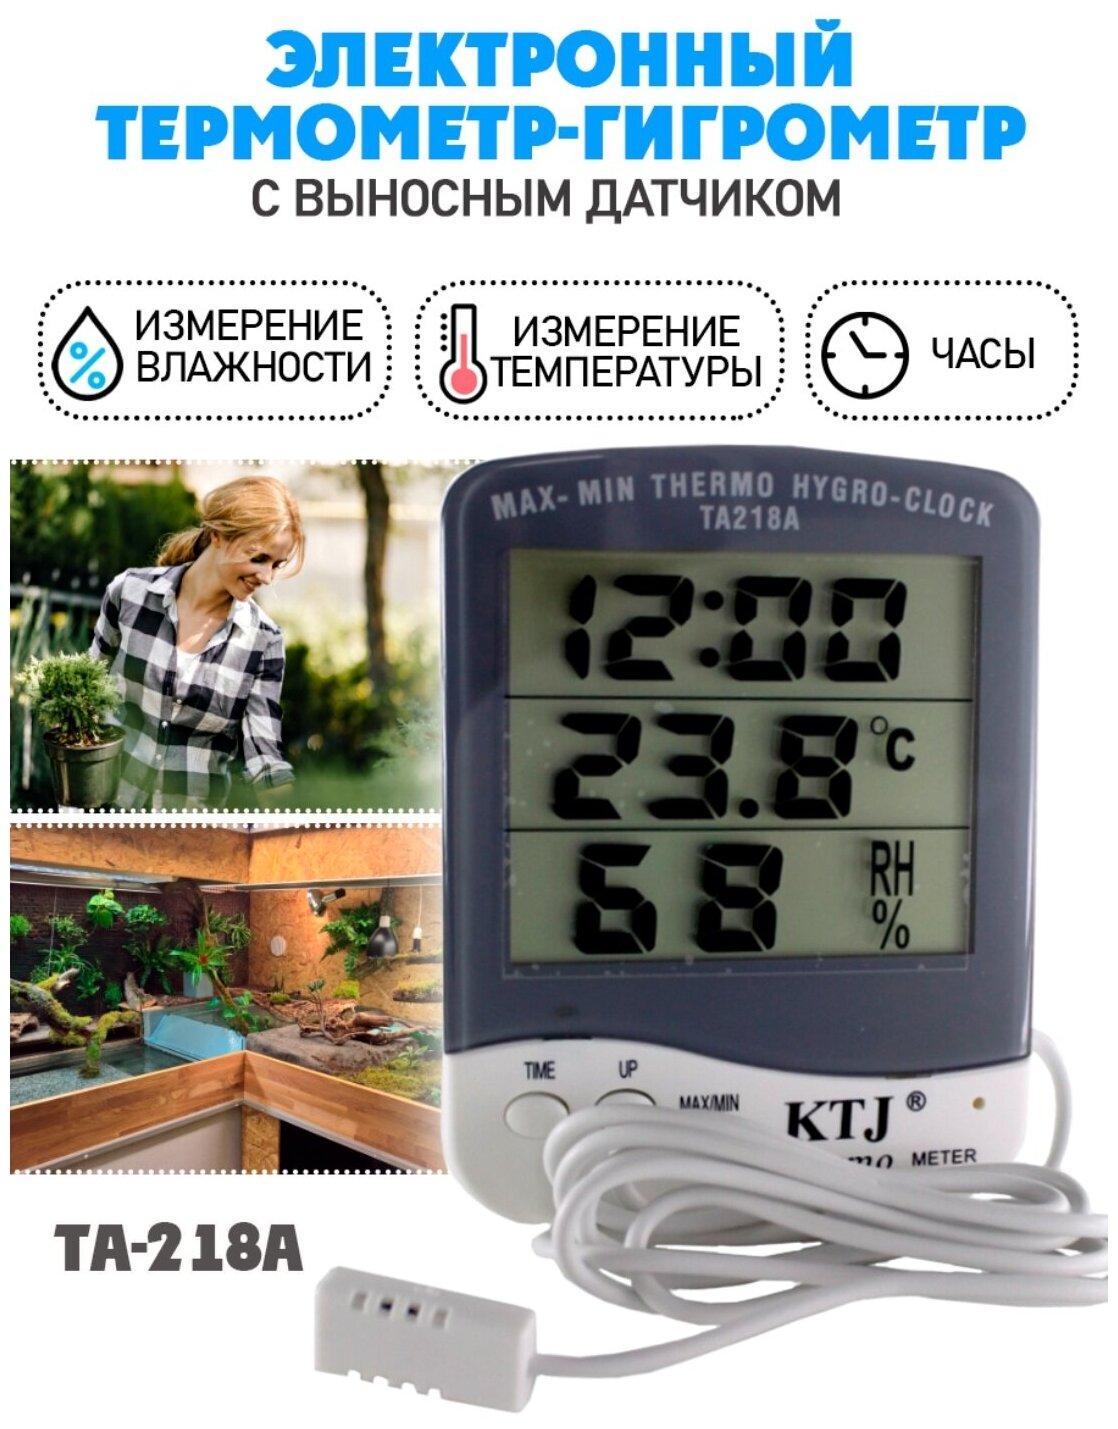 Термометр/ термометр гигрометр цифровой / выносной датчик/ TA-218A цвет белый - фотография № 1